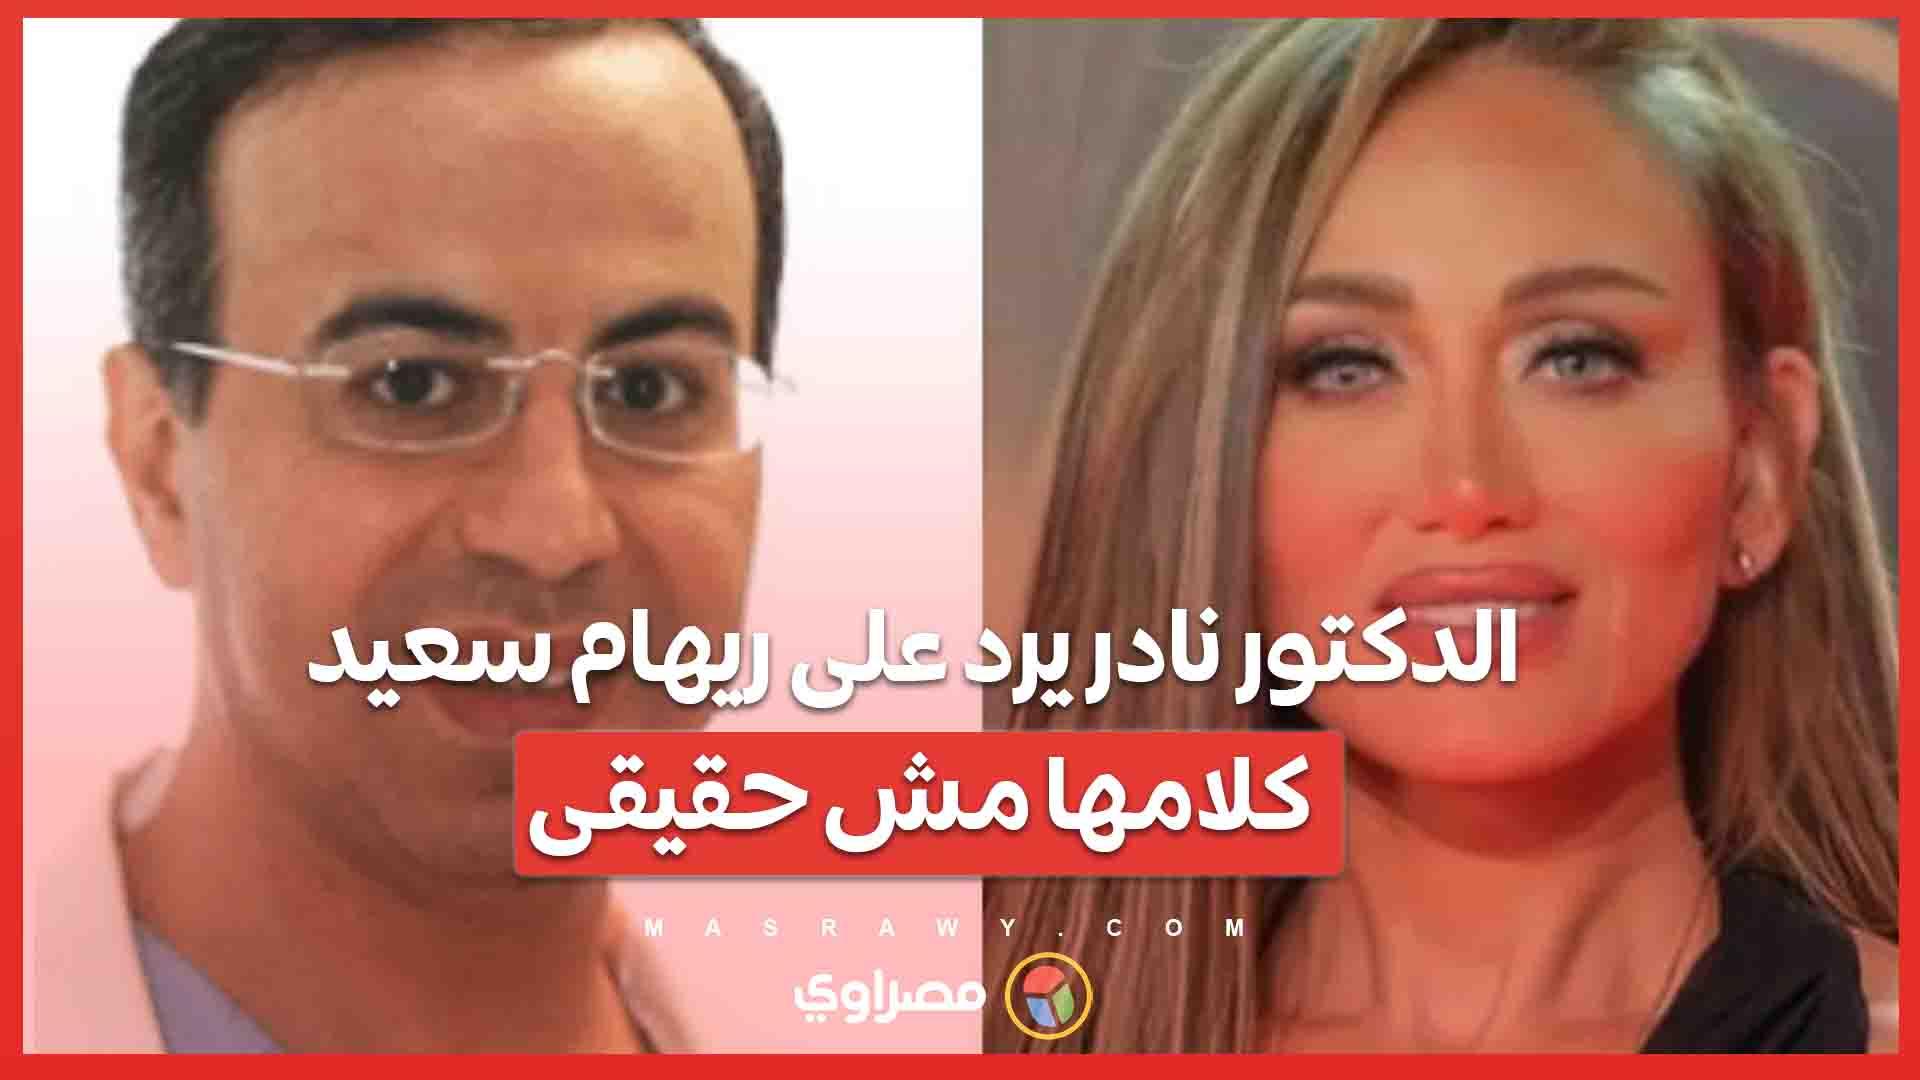 الدكتور نادر يرد على ريهام سعيد .. كلامها مش حقيقى